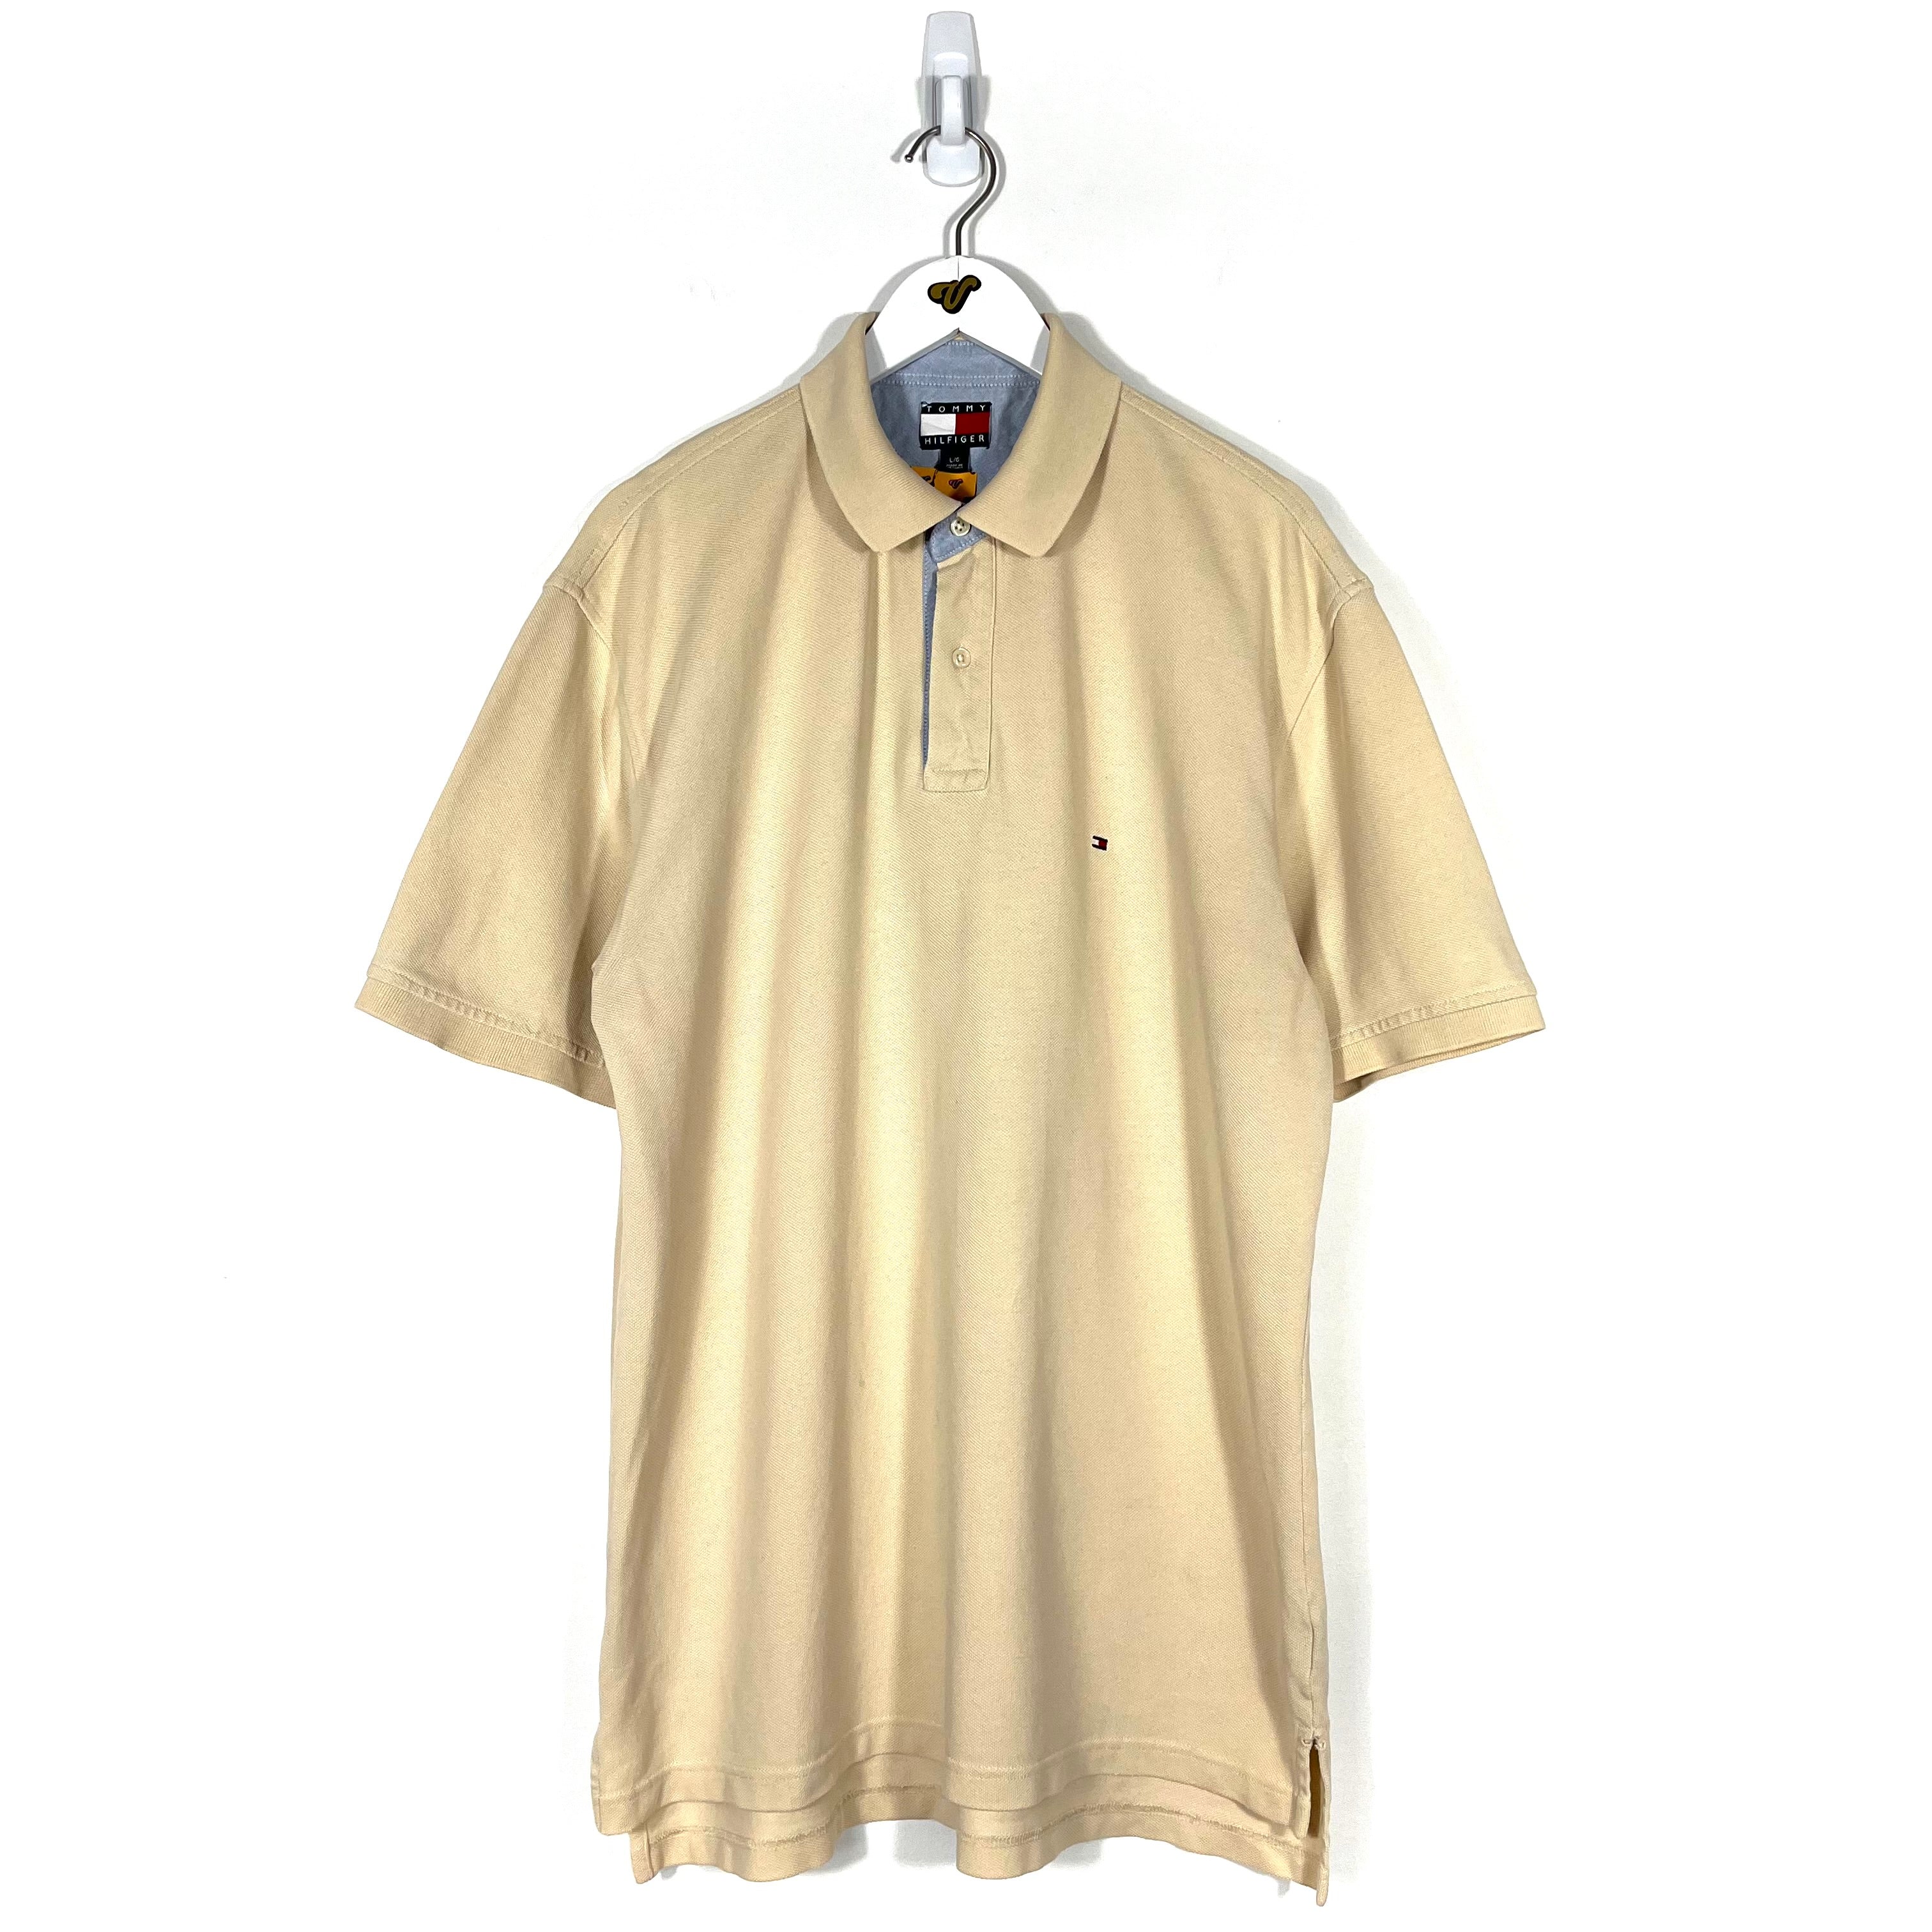 Vintage Tommy Hilfiger Polo Shirt - Men's Large